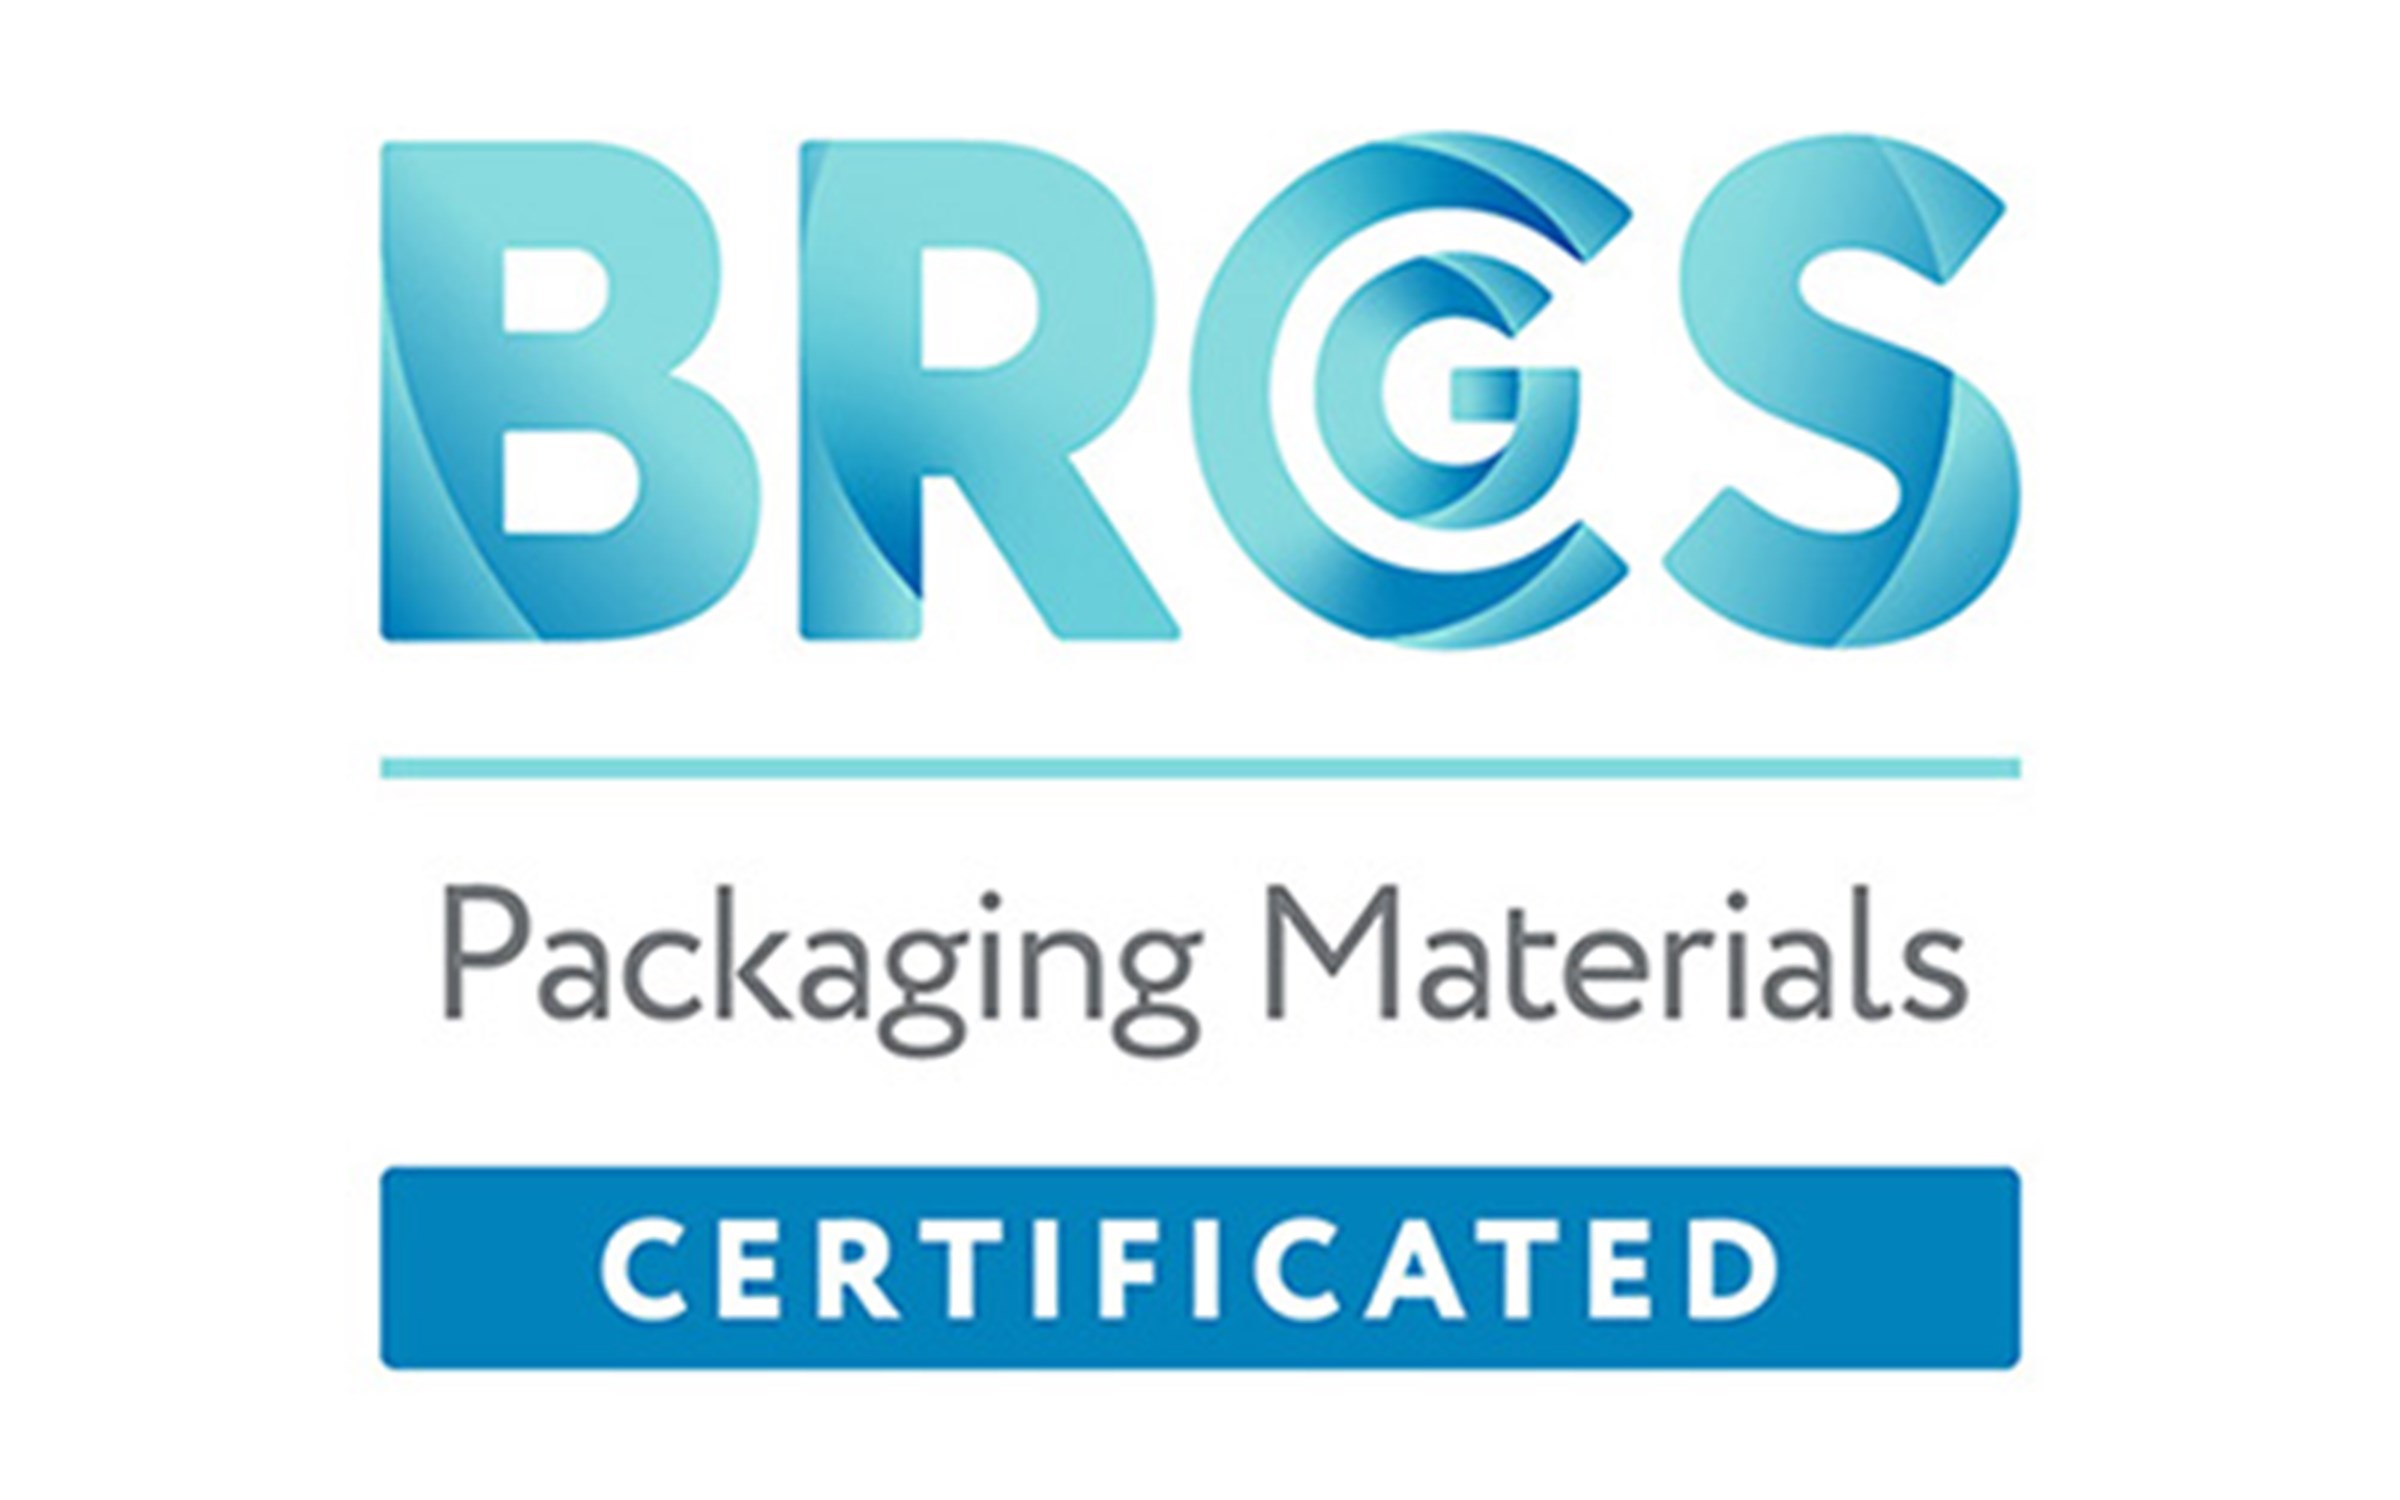 BRCGS packaging (food)